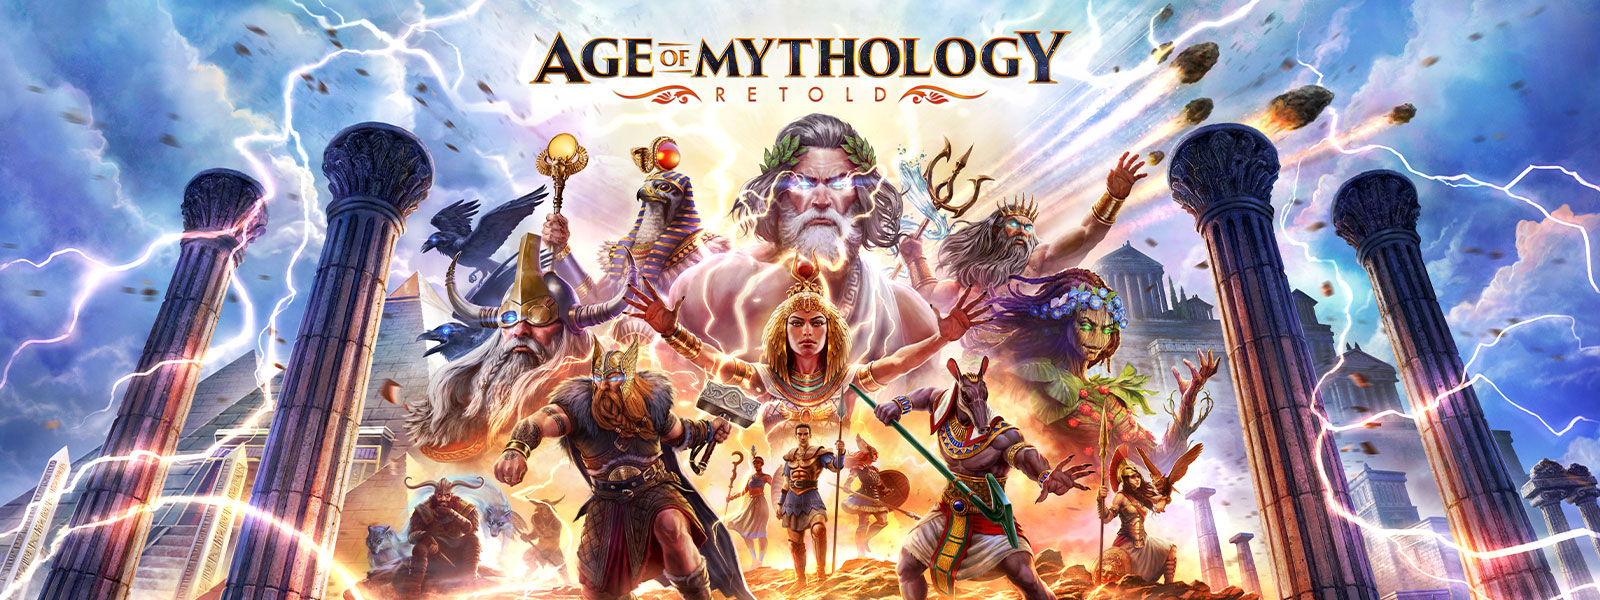 Logotipo de Age of Mythology: Retold, dioses y mitos de la historia posan juntos y descienden del cielo.